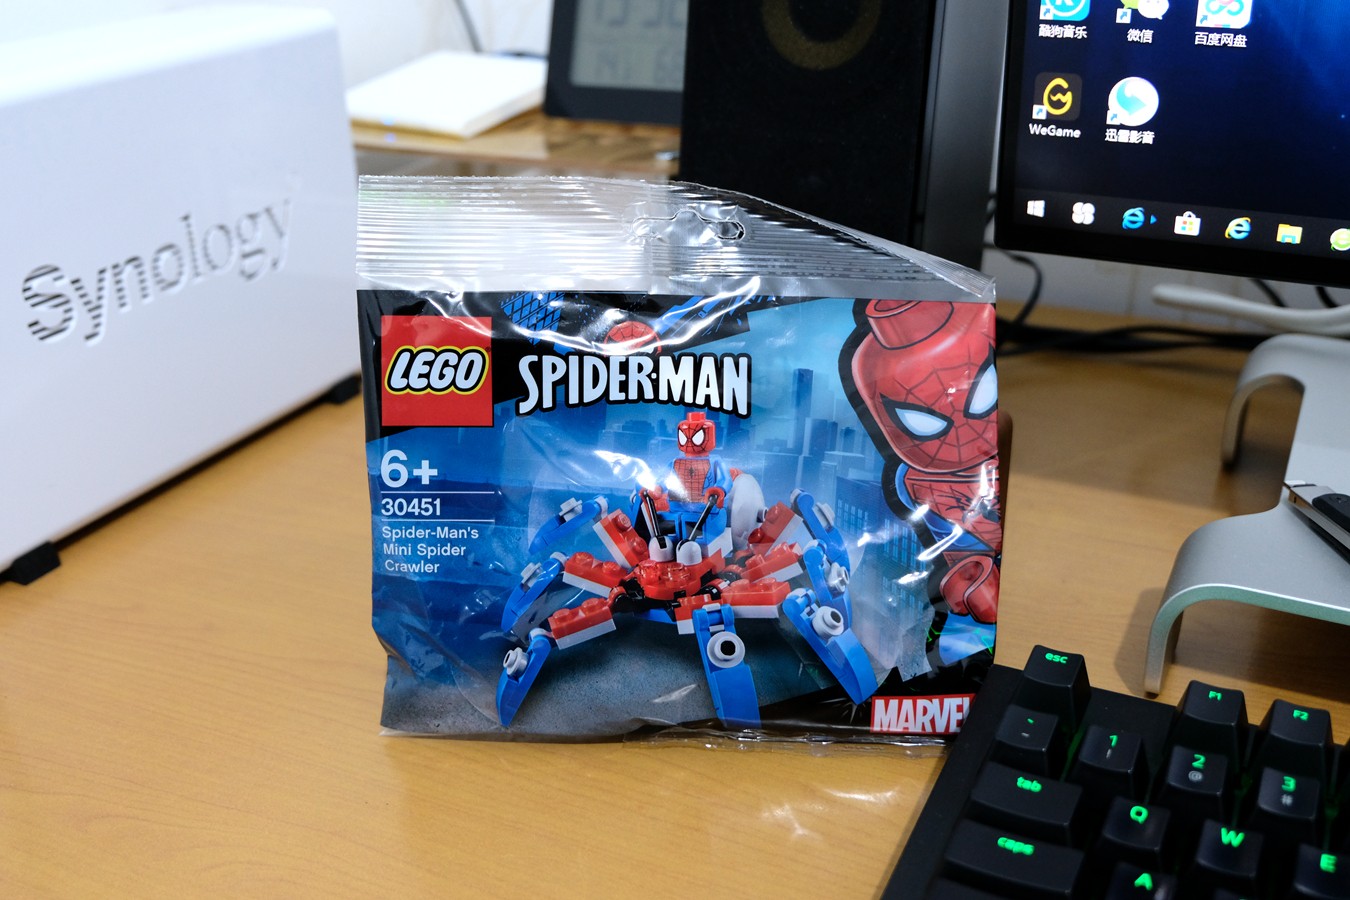 9 9元到手的lego真香 蜘蛛侠的迷你蜘蛛爬行器体验 聚超值